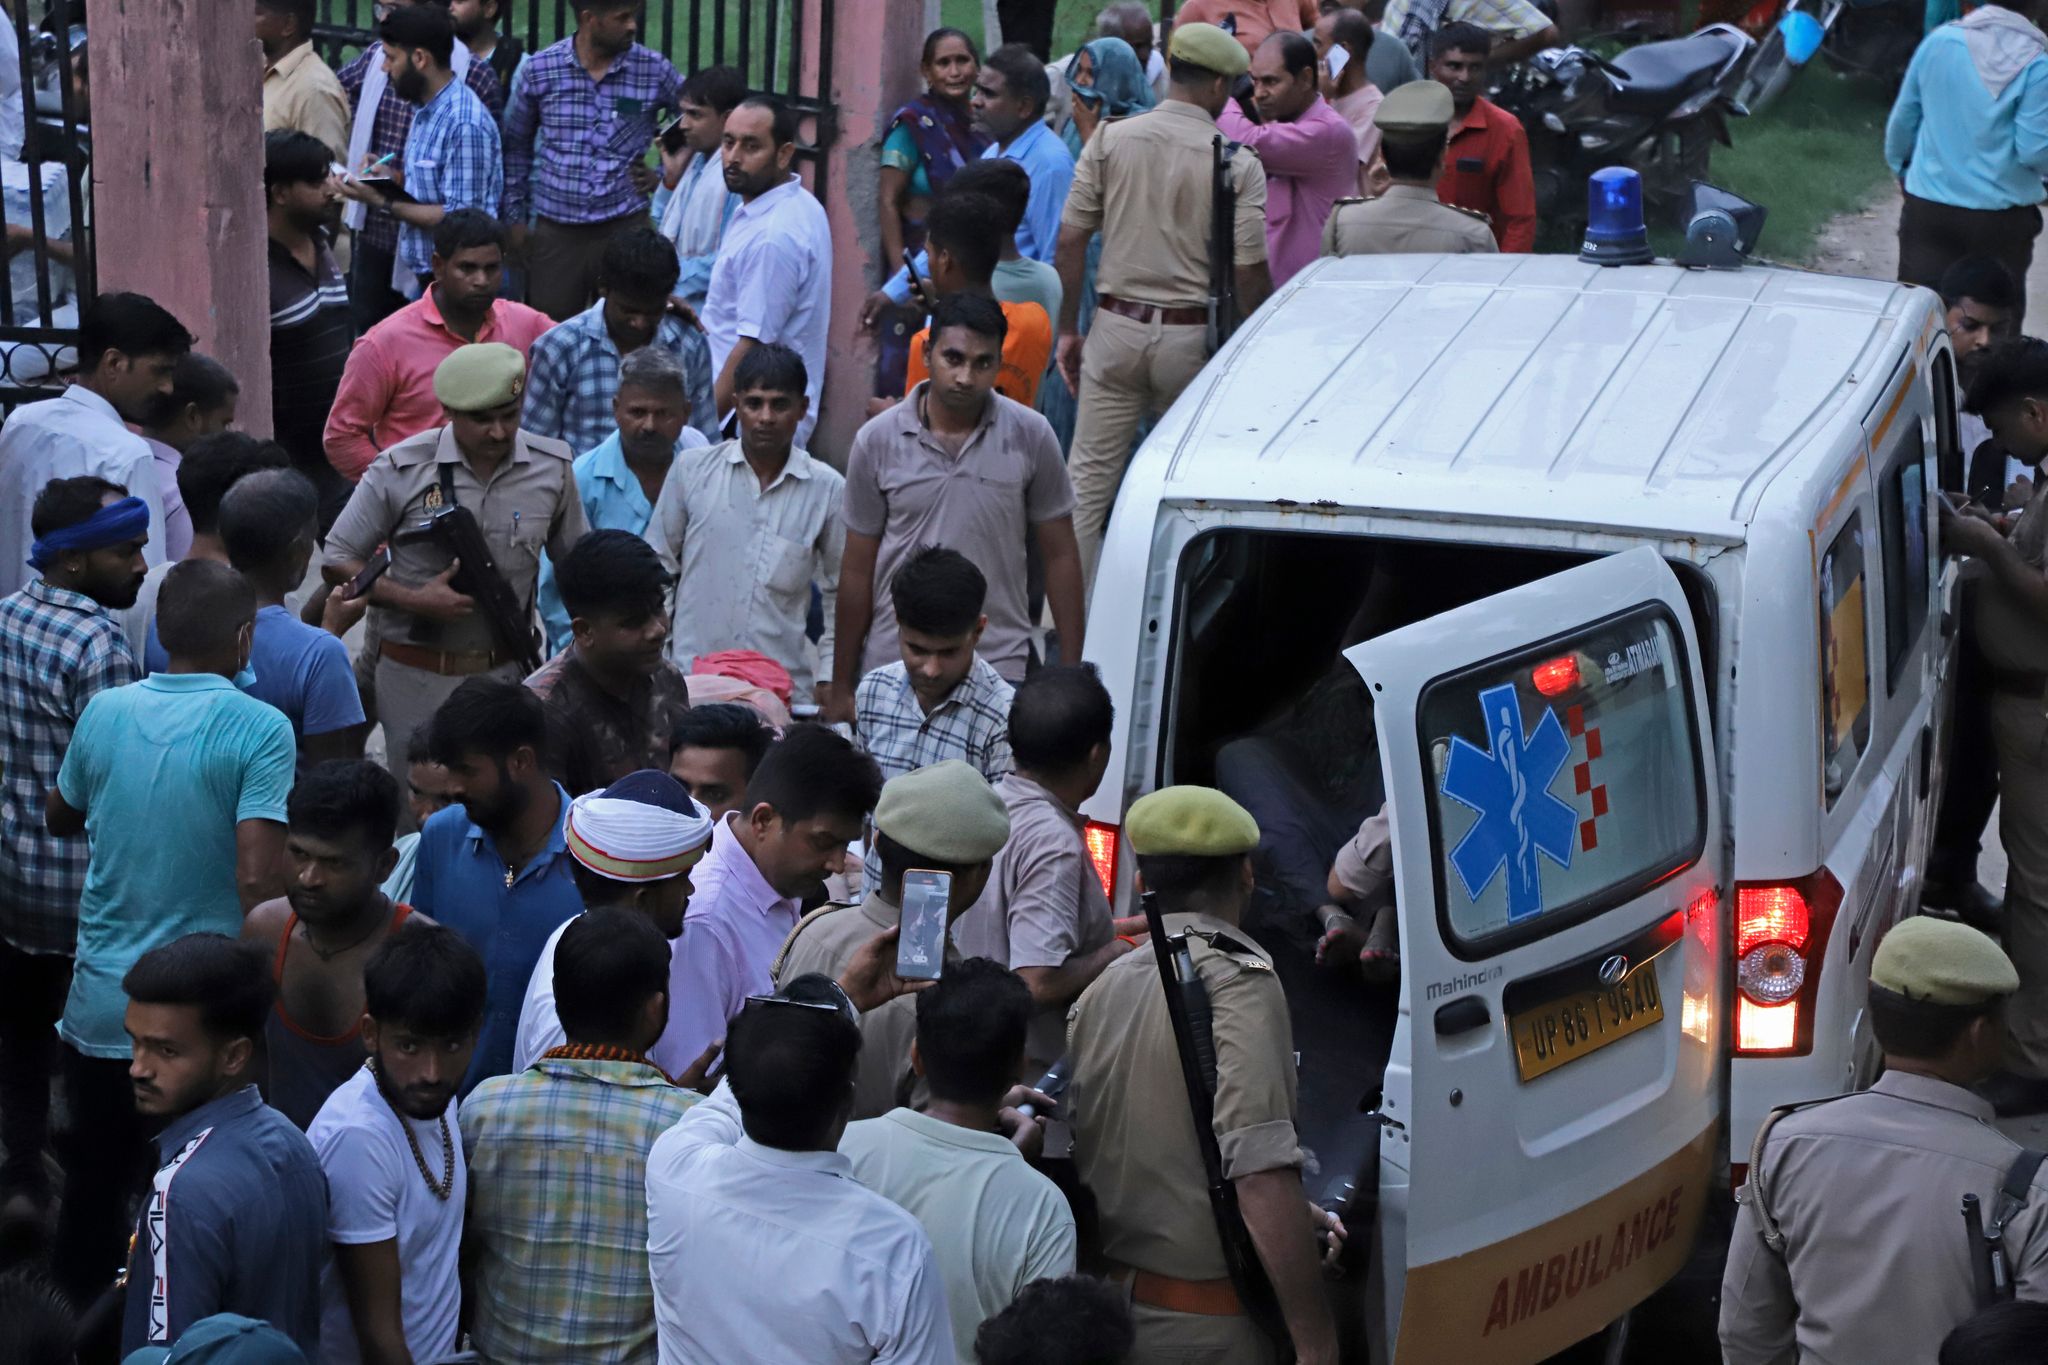 Tragödie bei religiöser Veranstaltung in Indien: Mindestens 107 Tote